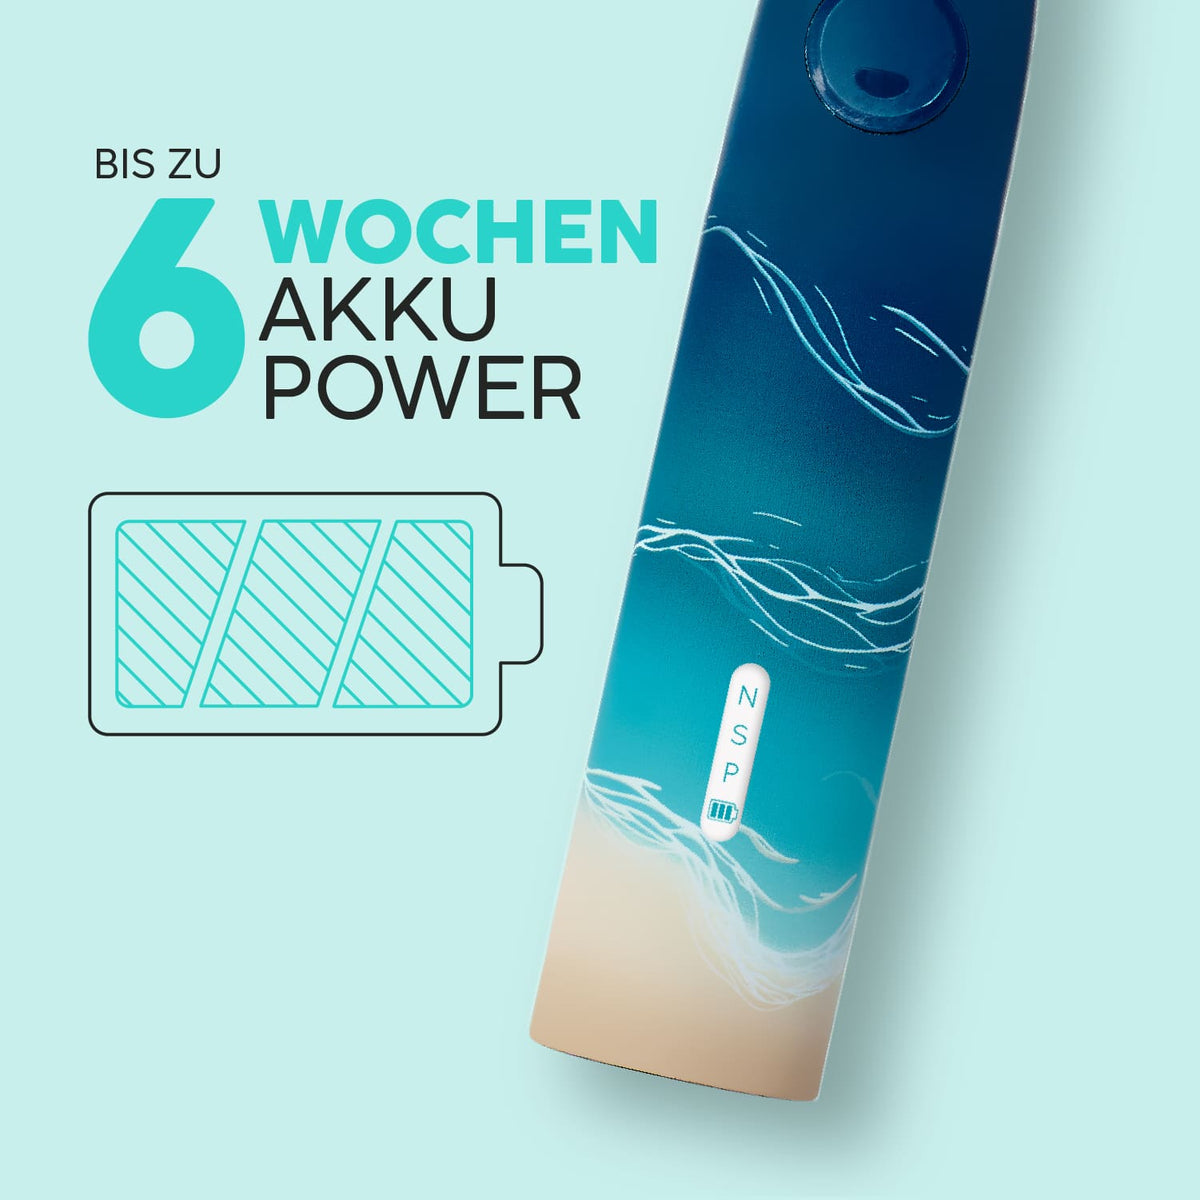 Bis zu 6 Wochen Akku Power